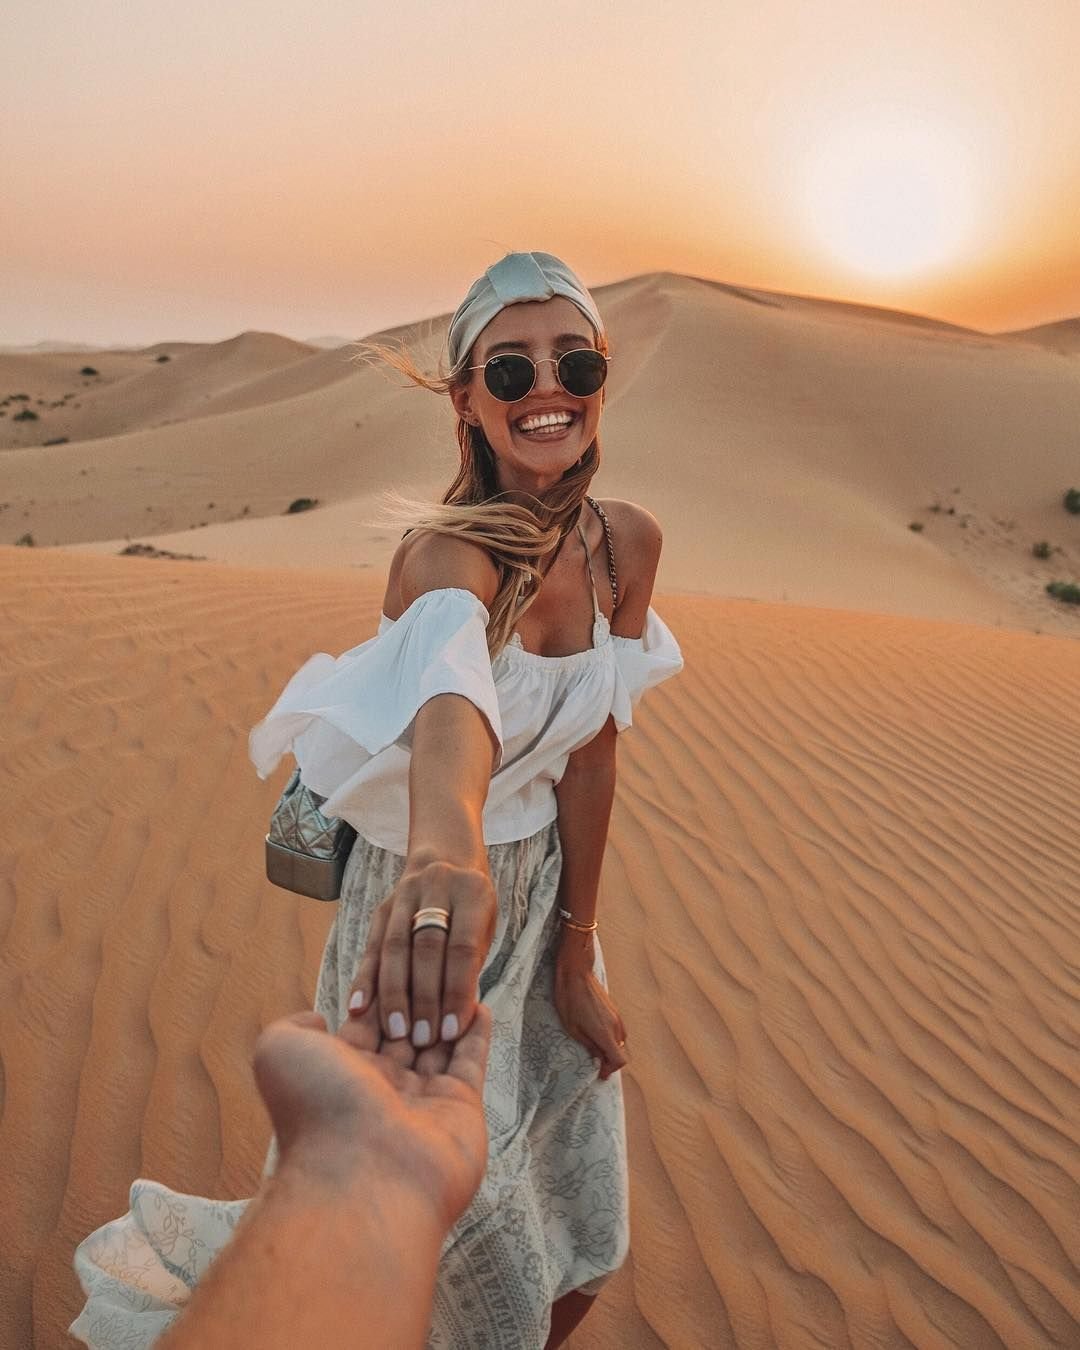 Фото симпатичной девушки в пустыне